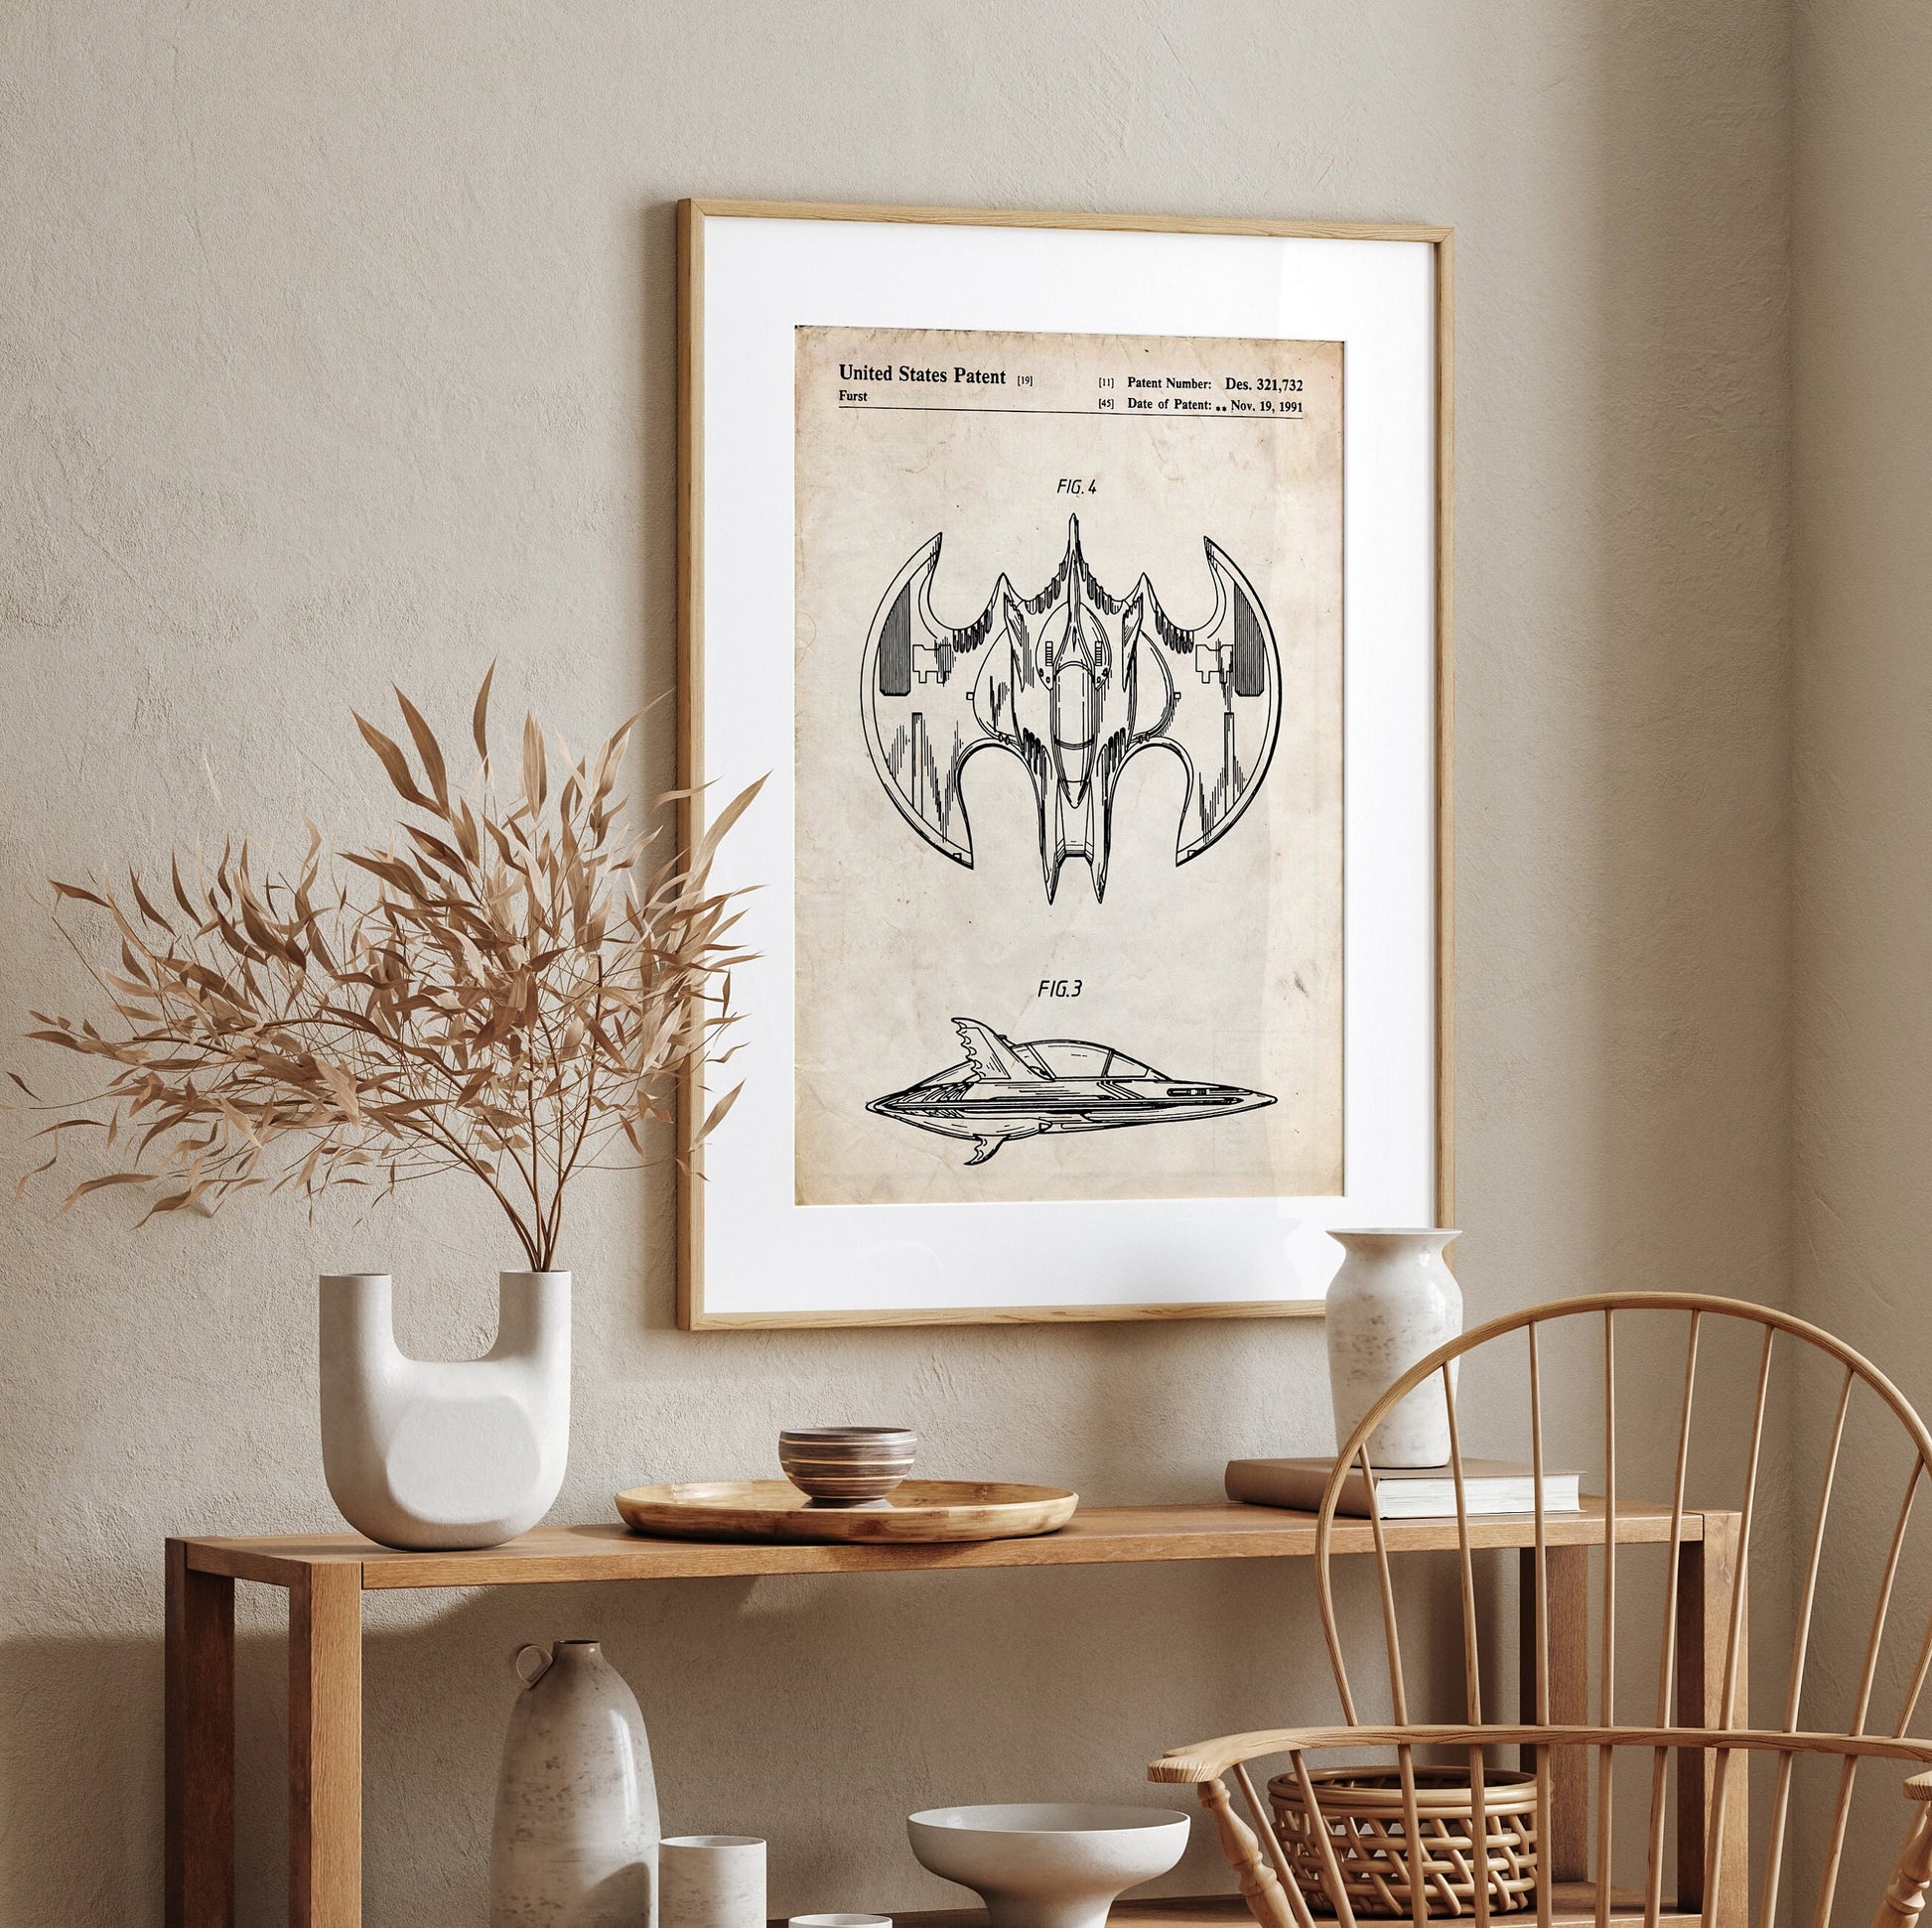 Batwing Patent Print - Magic Posters